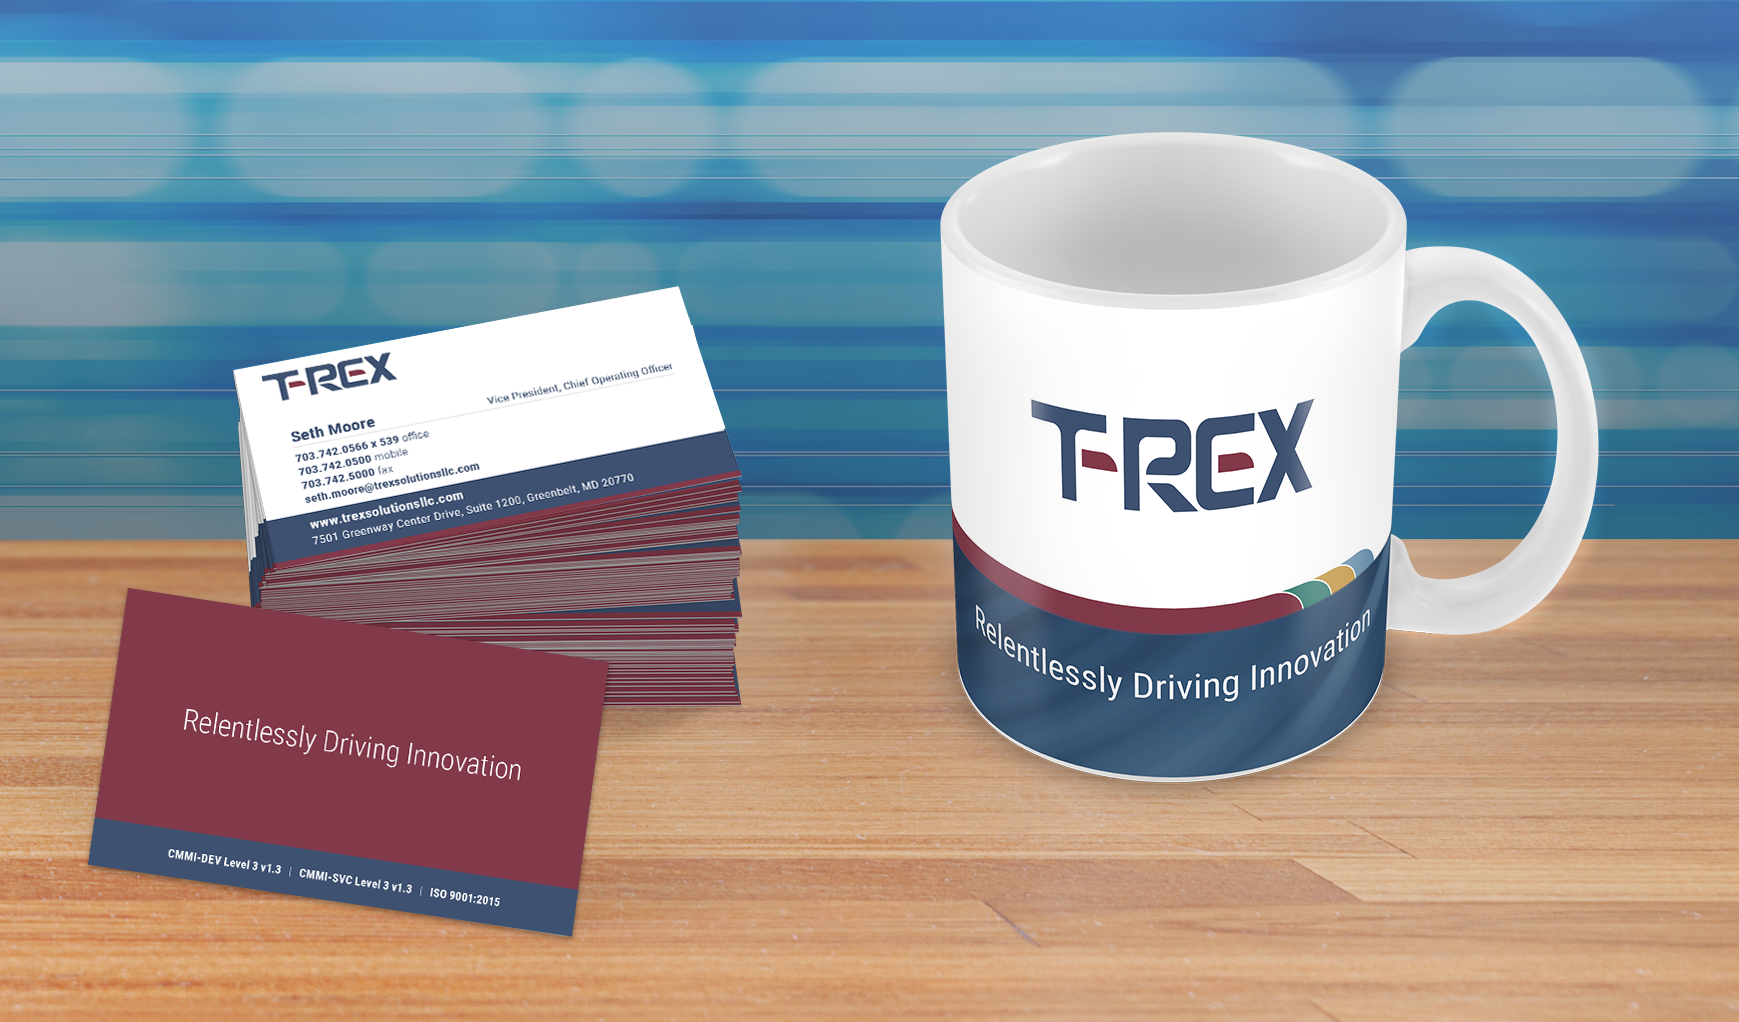 T-Rex Rebranding Relentlessly Driving Innovation